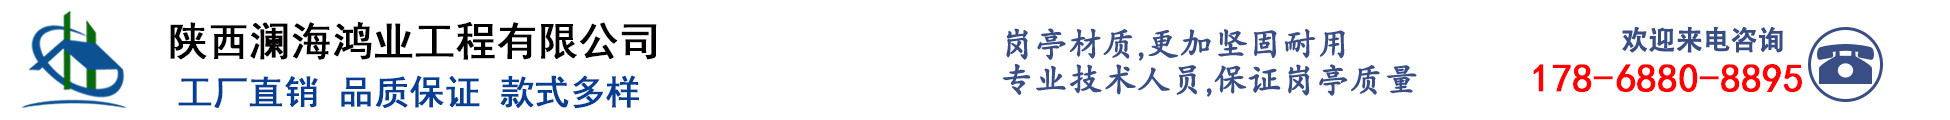 陕西澜海鸿业公司_Logo